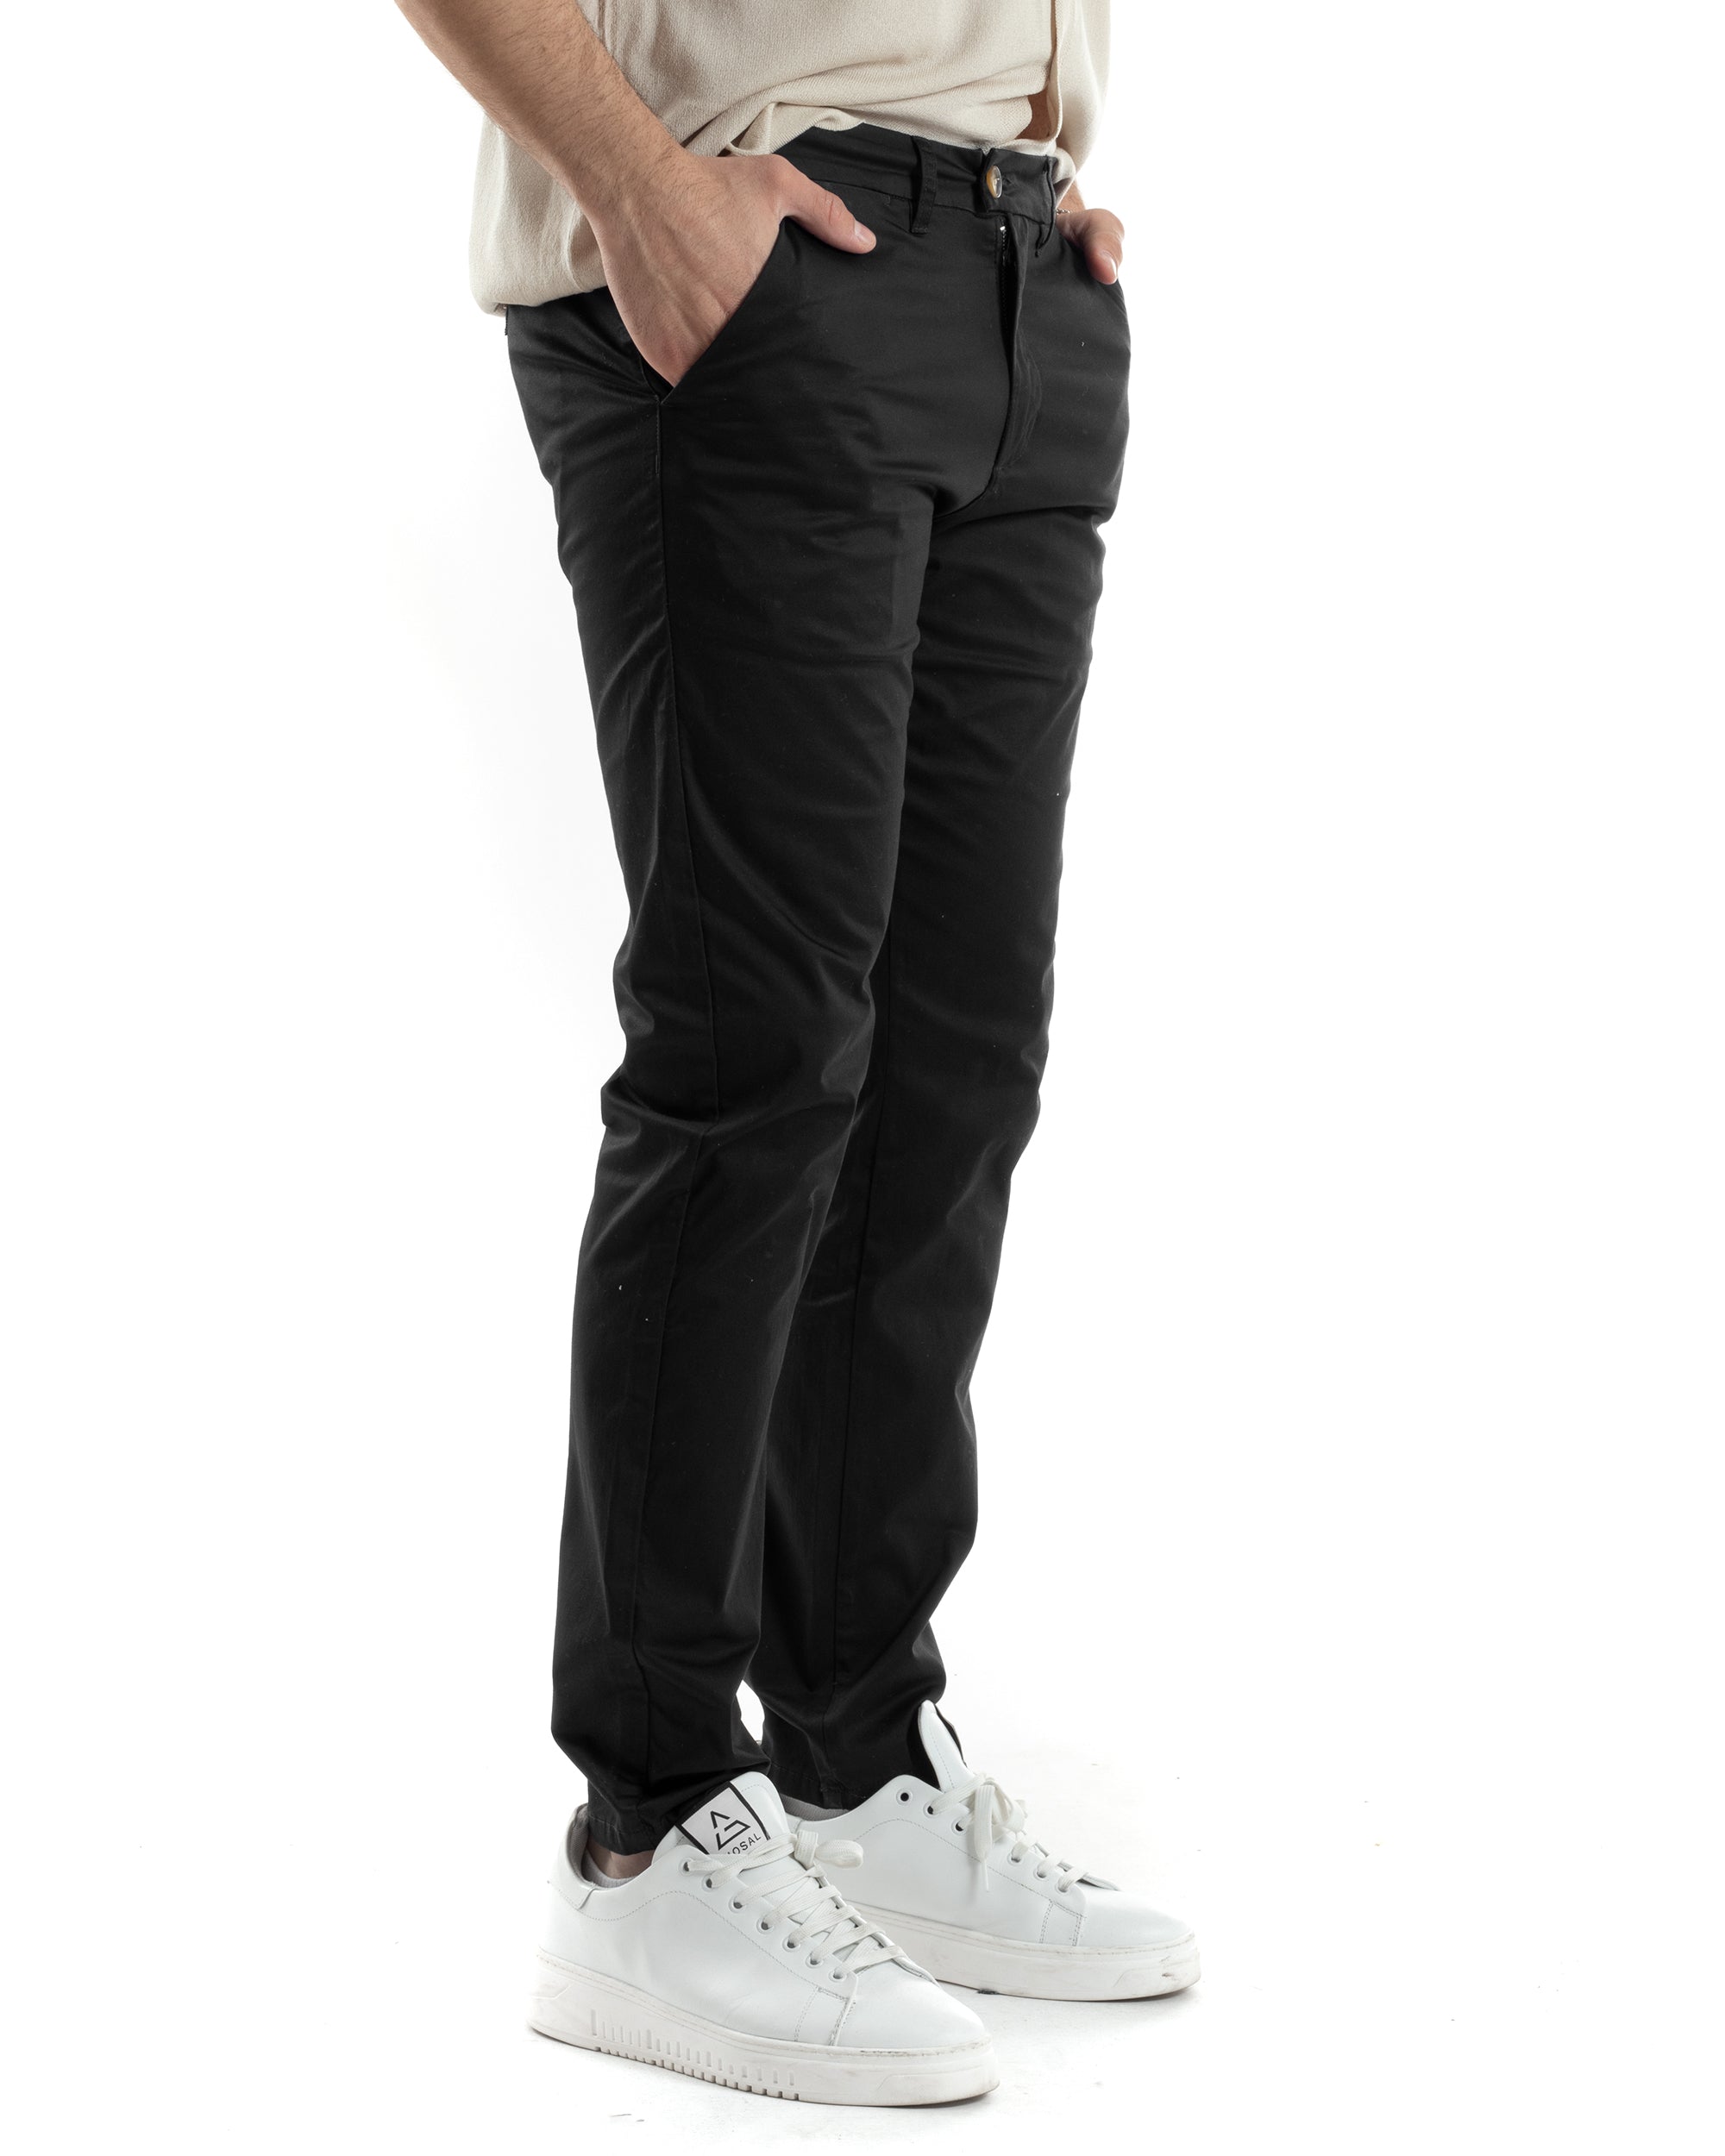 Pantaloni Uomo Cotone Raso Tasca America Slim Fit Abbottonatura Allungata Tinta Unita Nero GIOSAL-P6061A